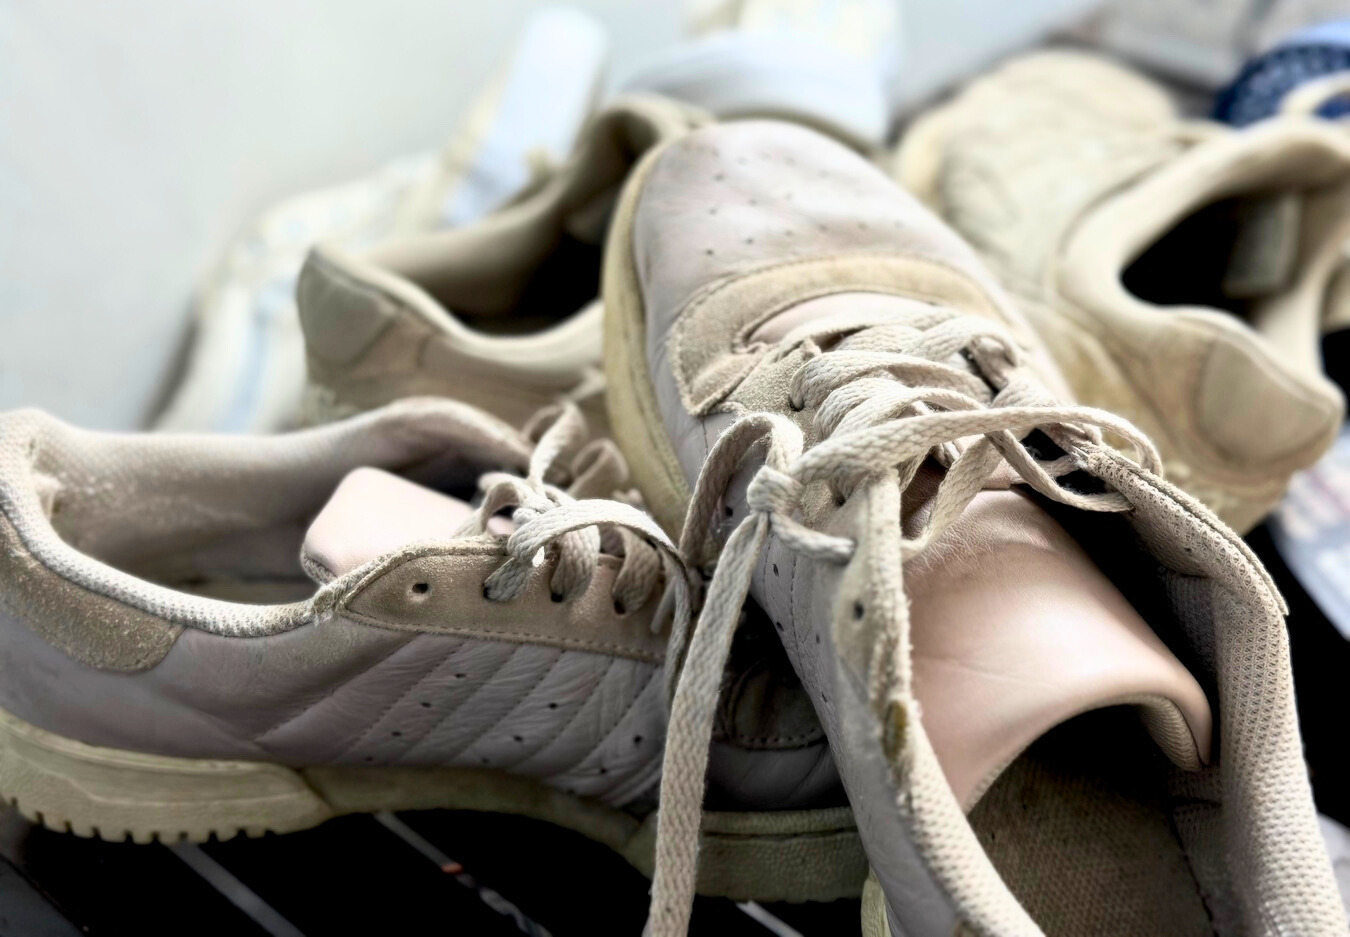 Nettoyage de Sneakers - Astuces pour des Baskets Impeccables